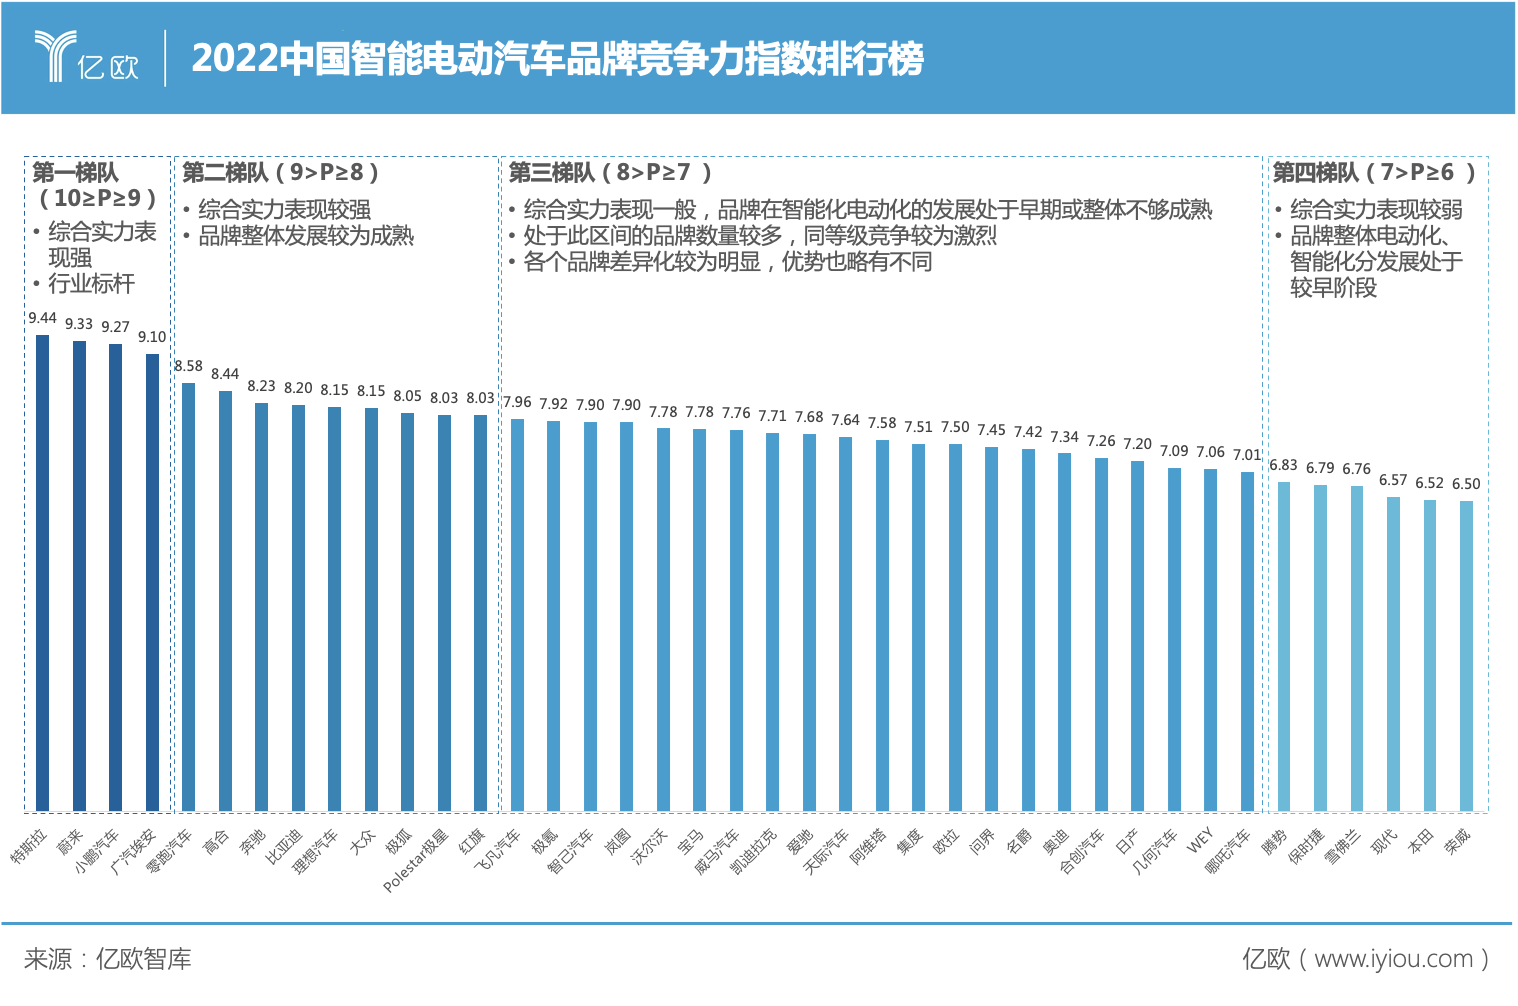 2022中国智能电动汽车品牌竞争力指数排行榜.jpg